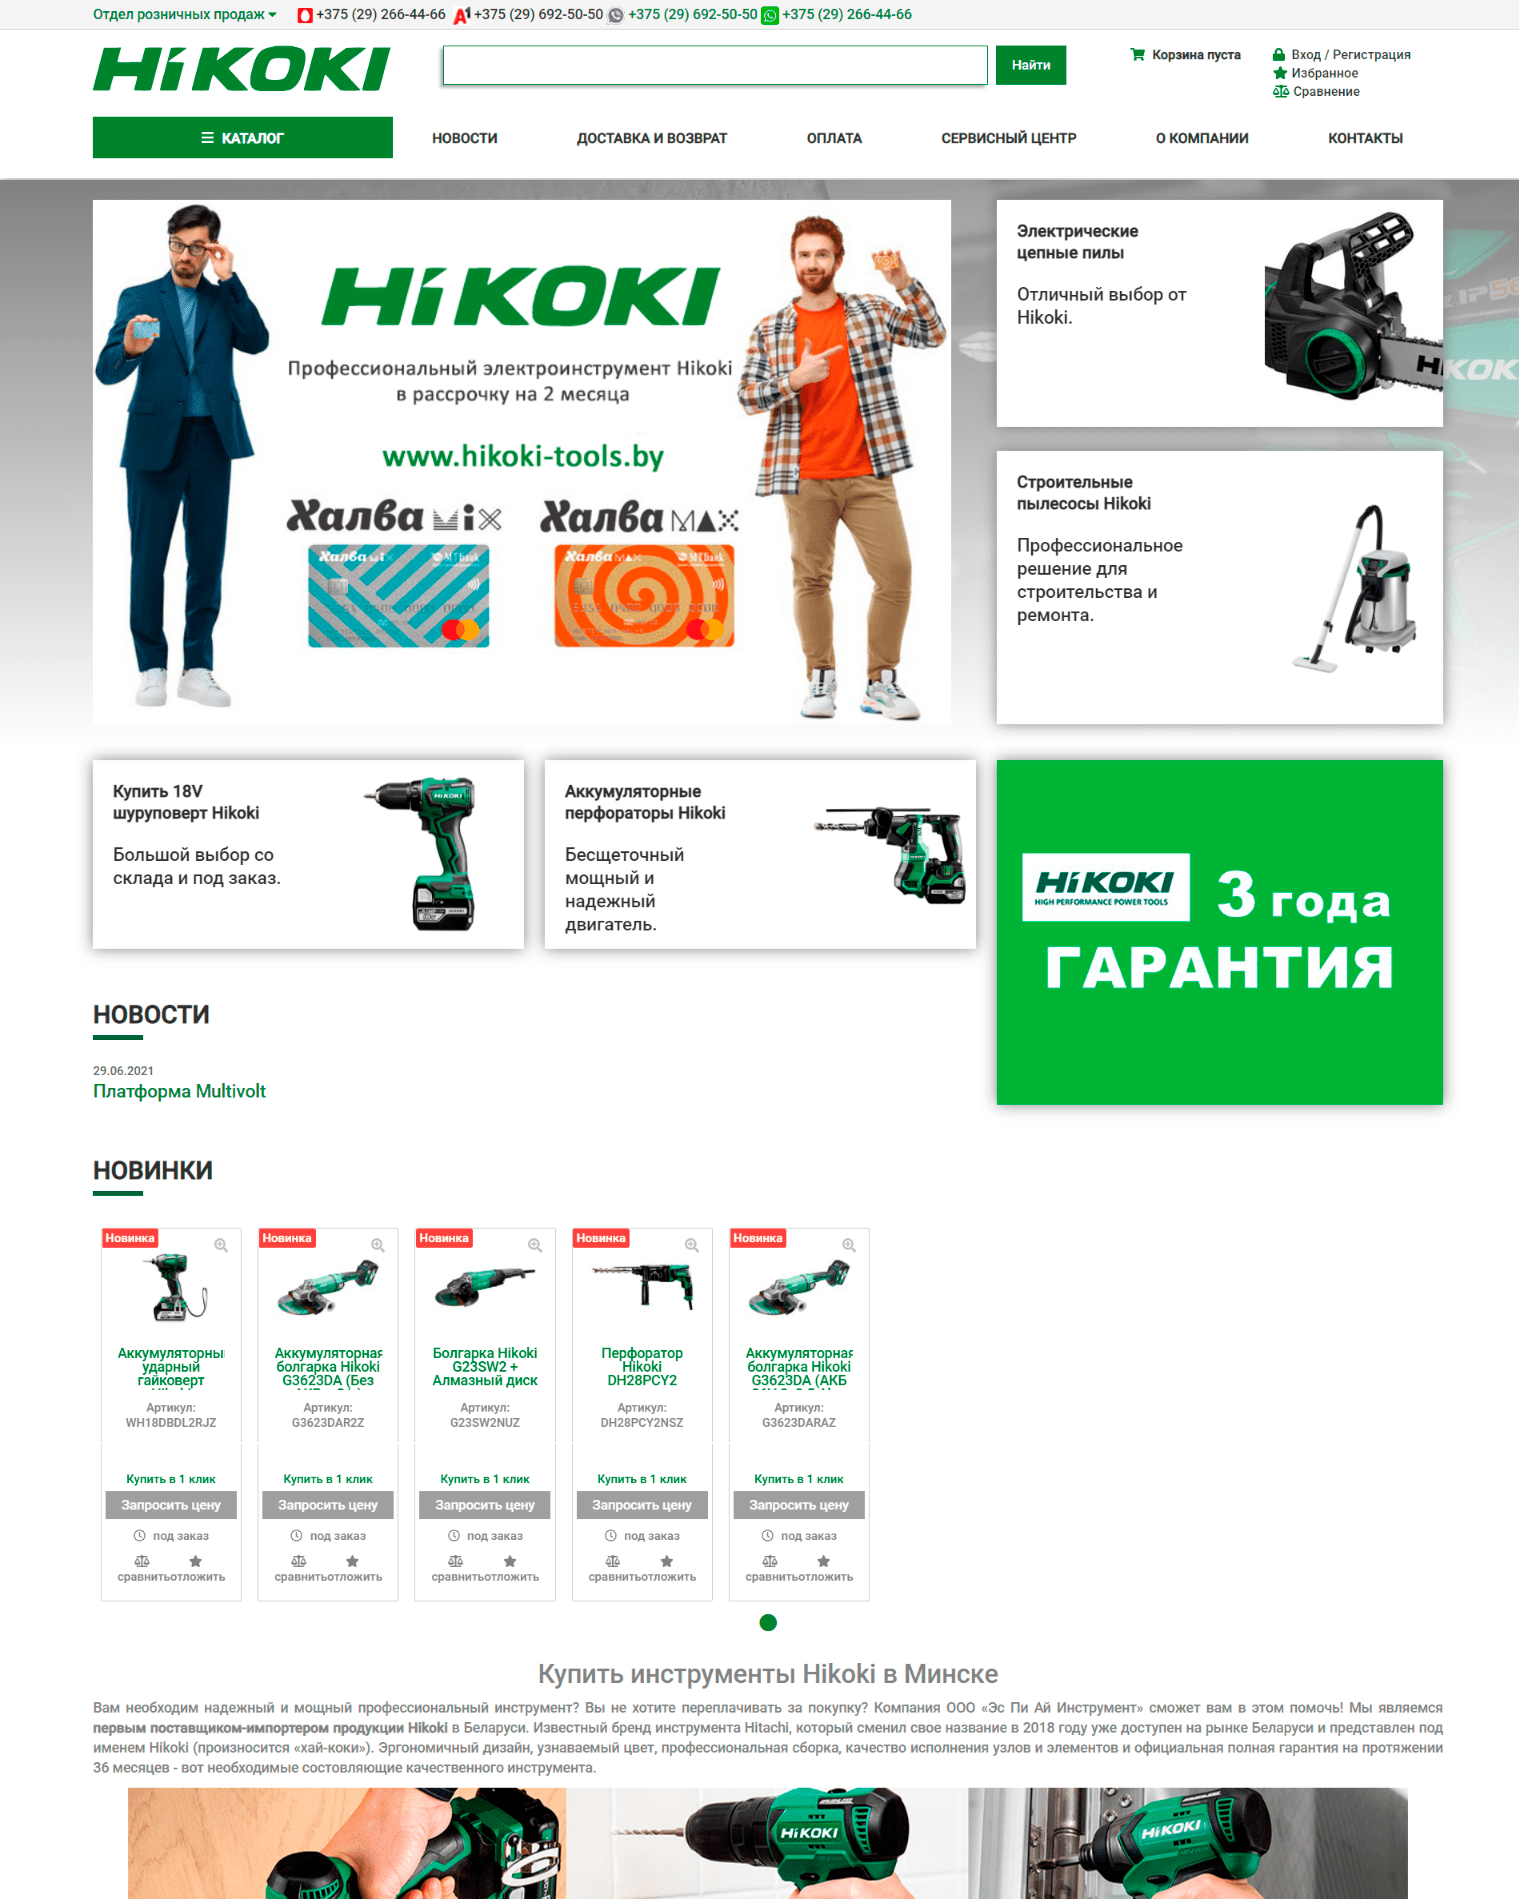 Hikoki shop in Belarus